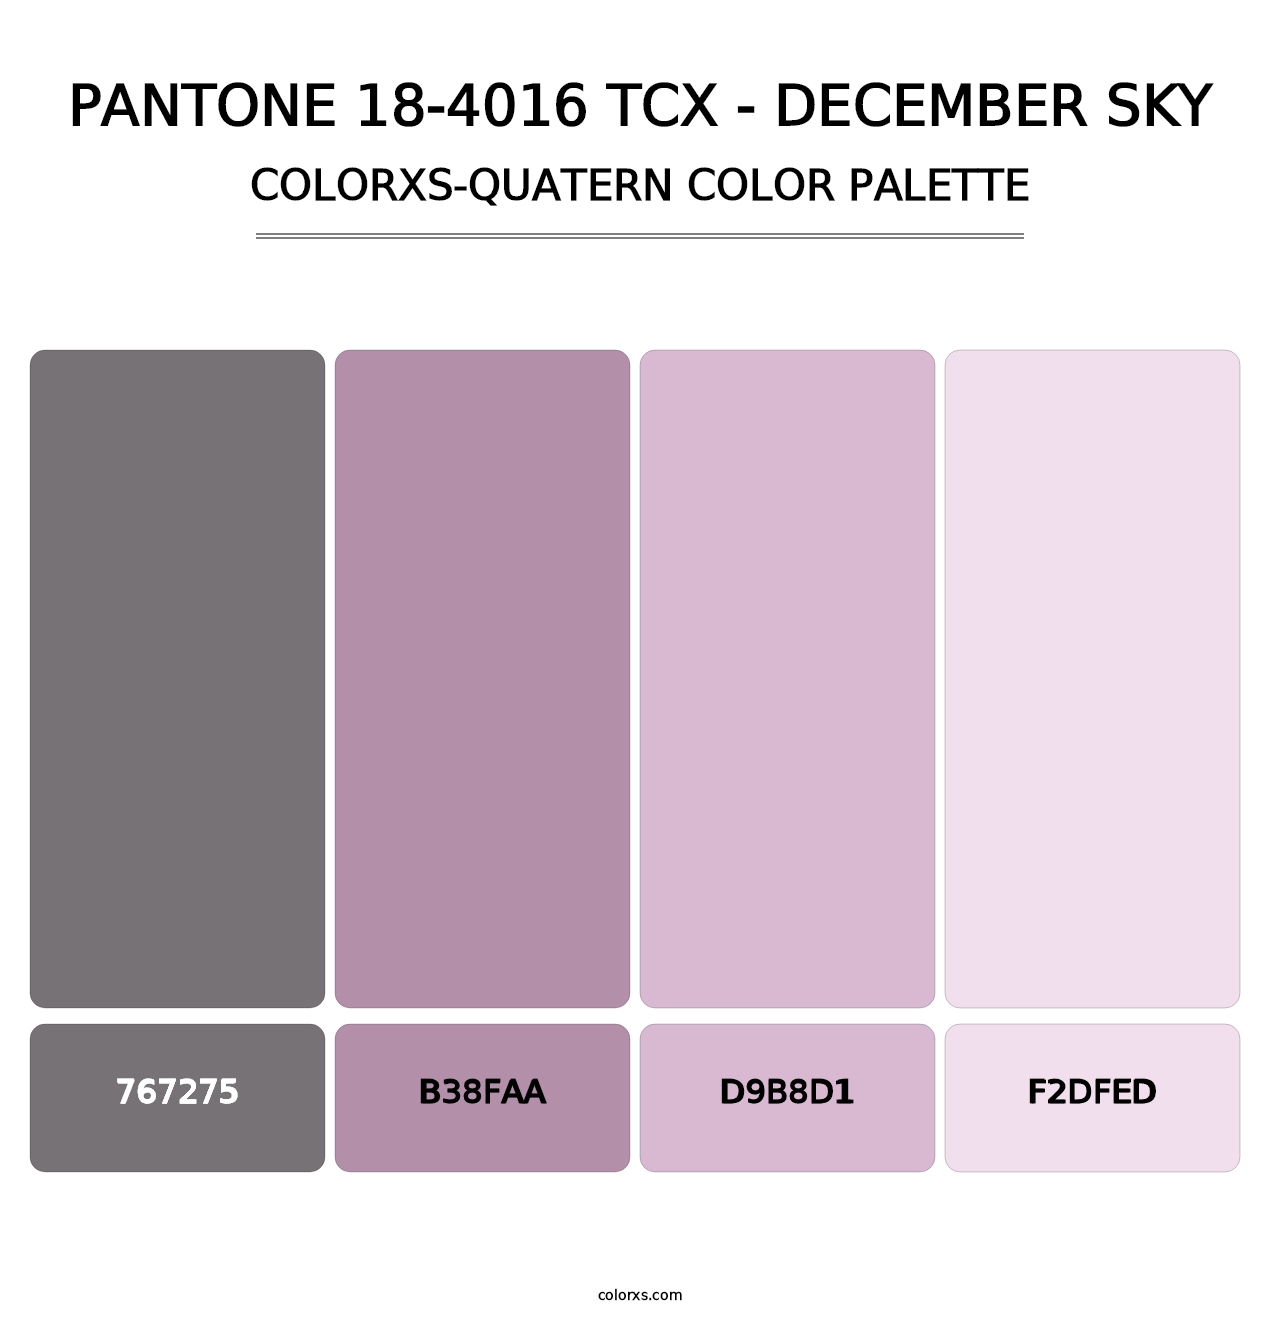 PANTONE 18-4016 TCX - December Sky - Colorxs Quatern Palette